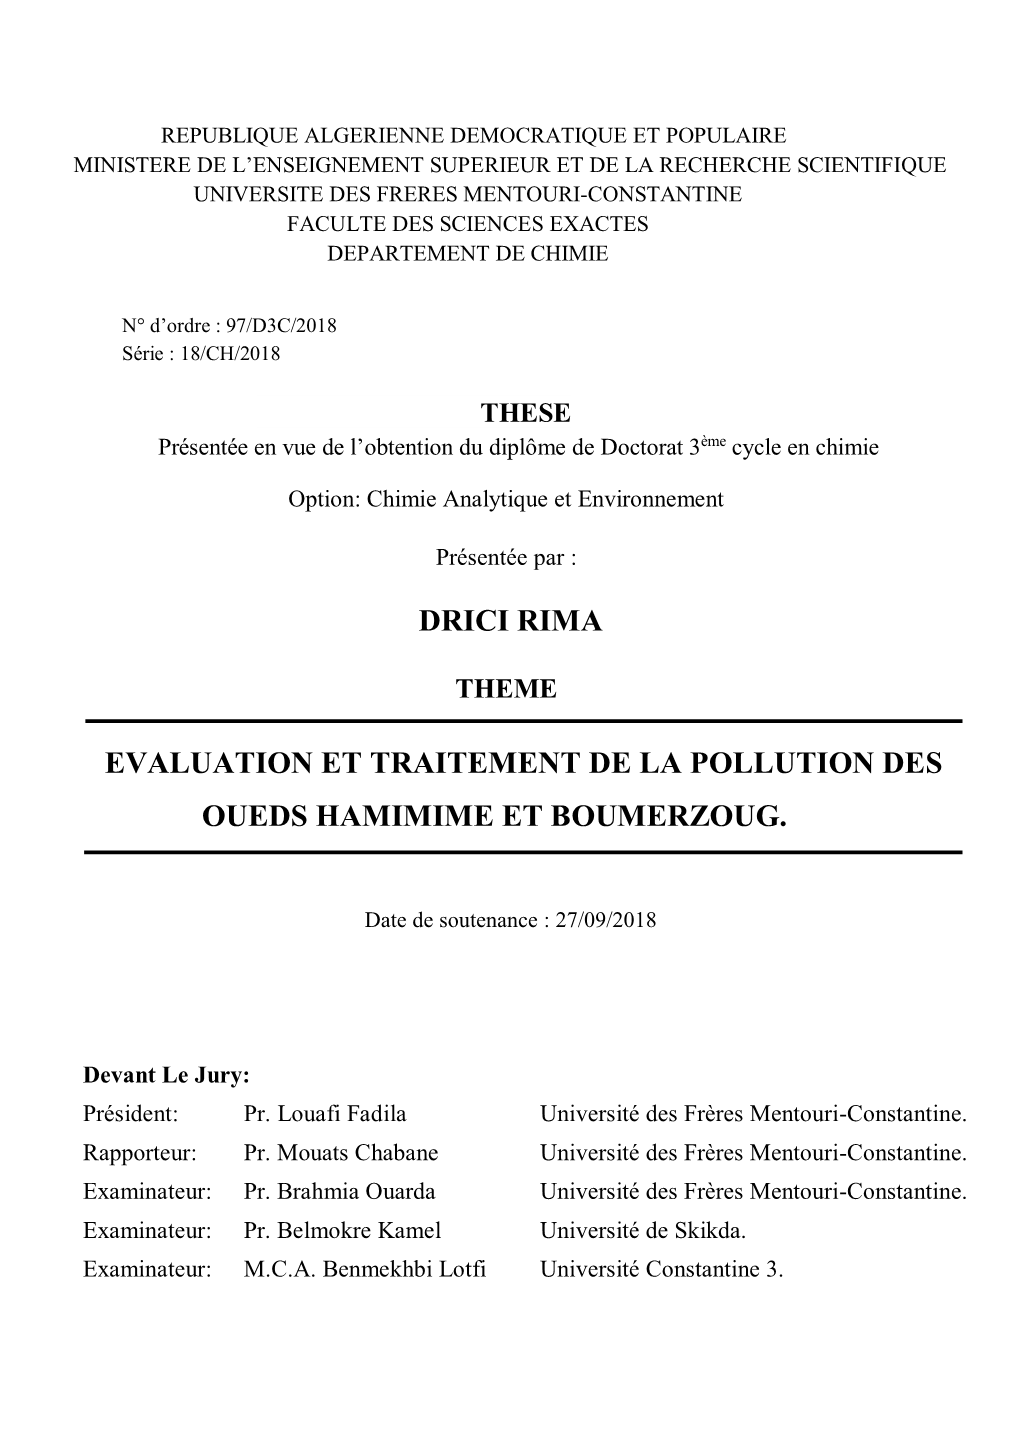 Drici Rima Evaluation Et Traitement De La Pollution Des Oueds Hamimime Et Boumerzoug